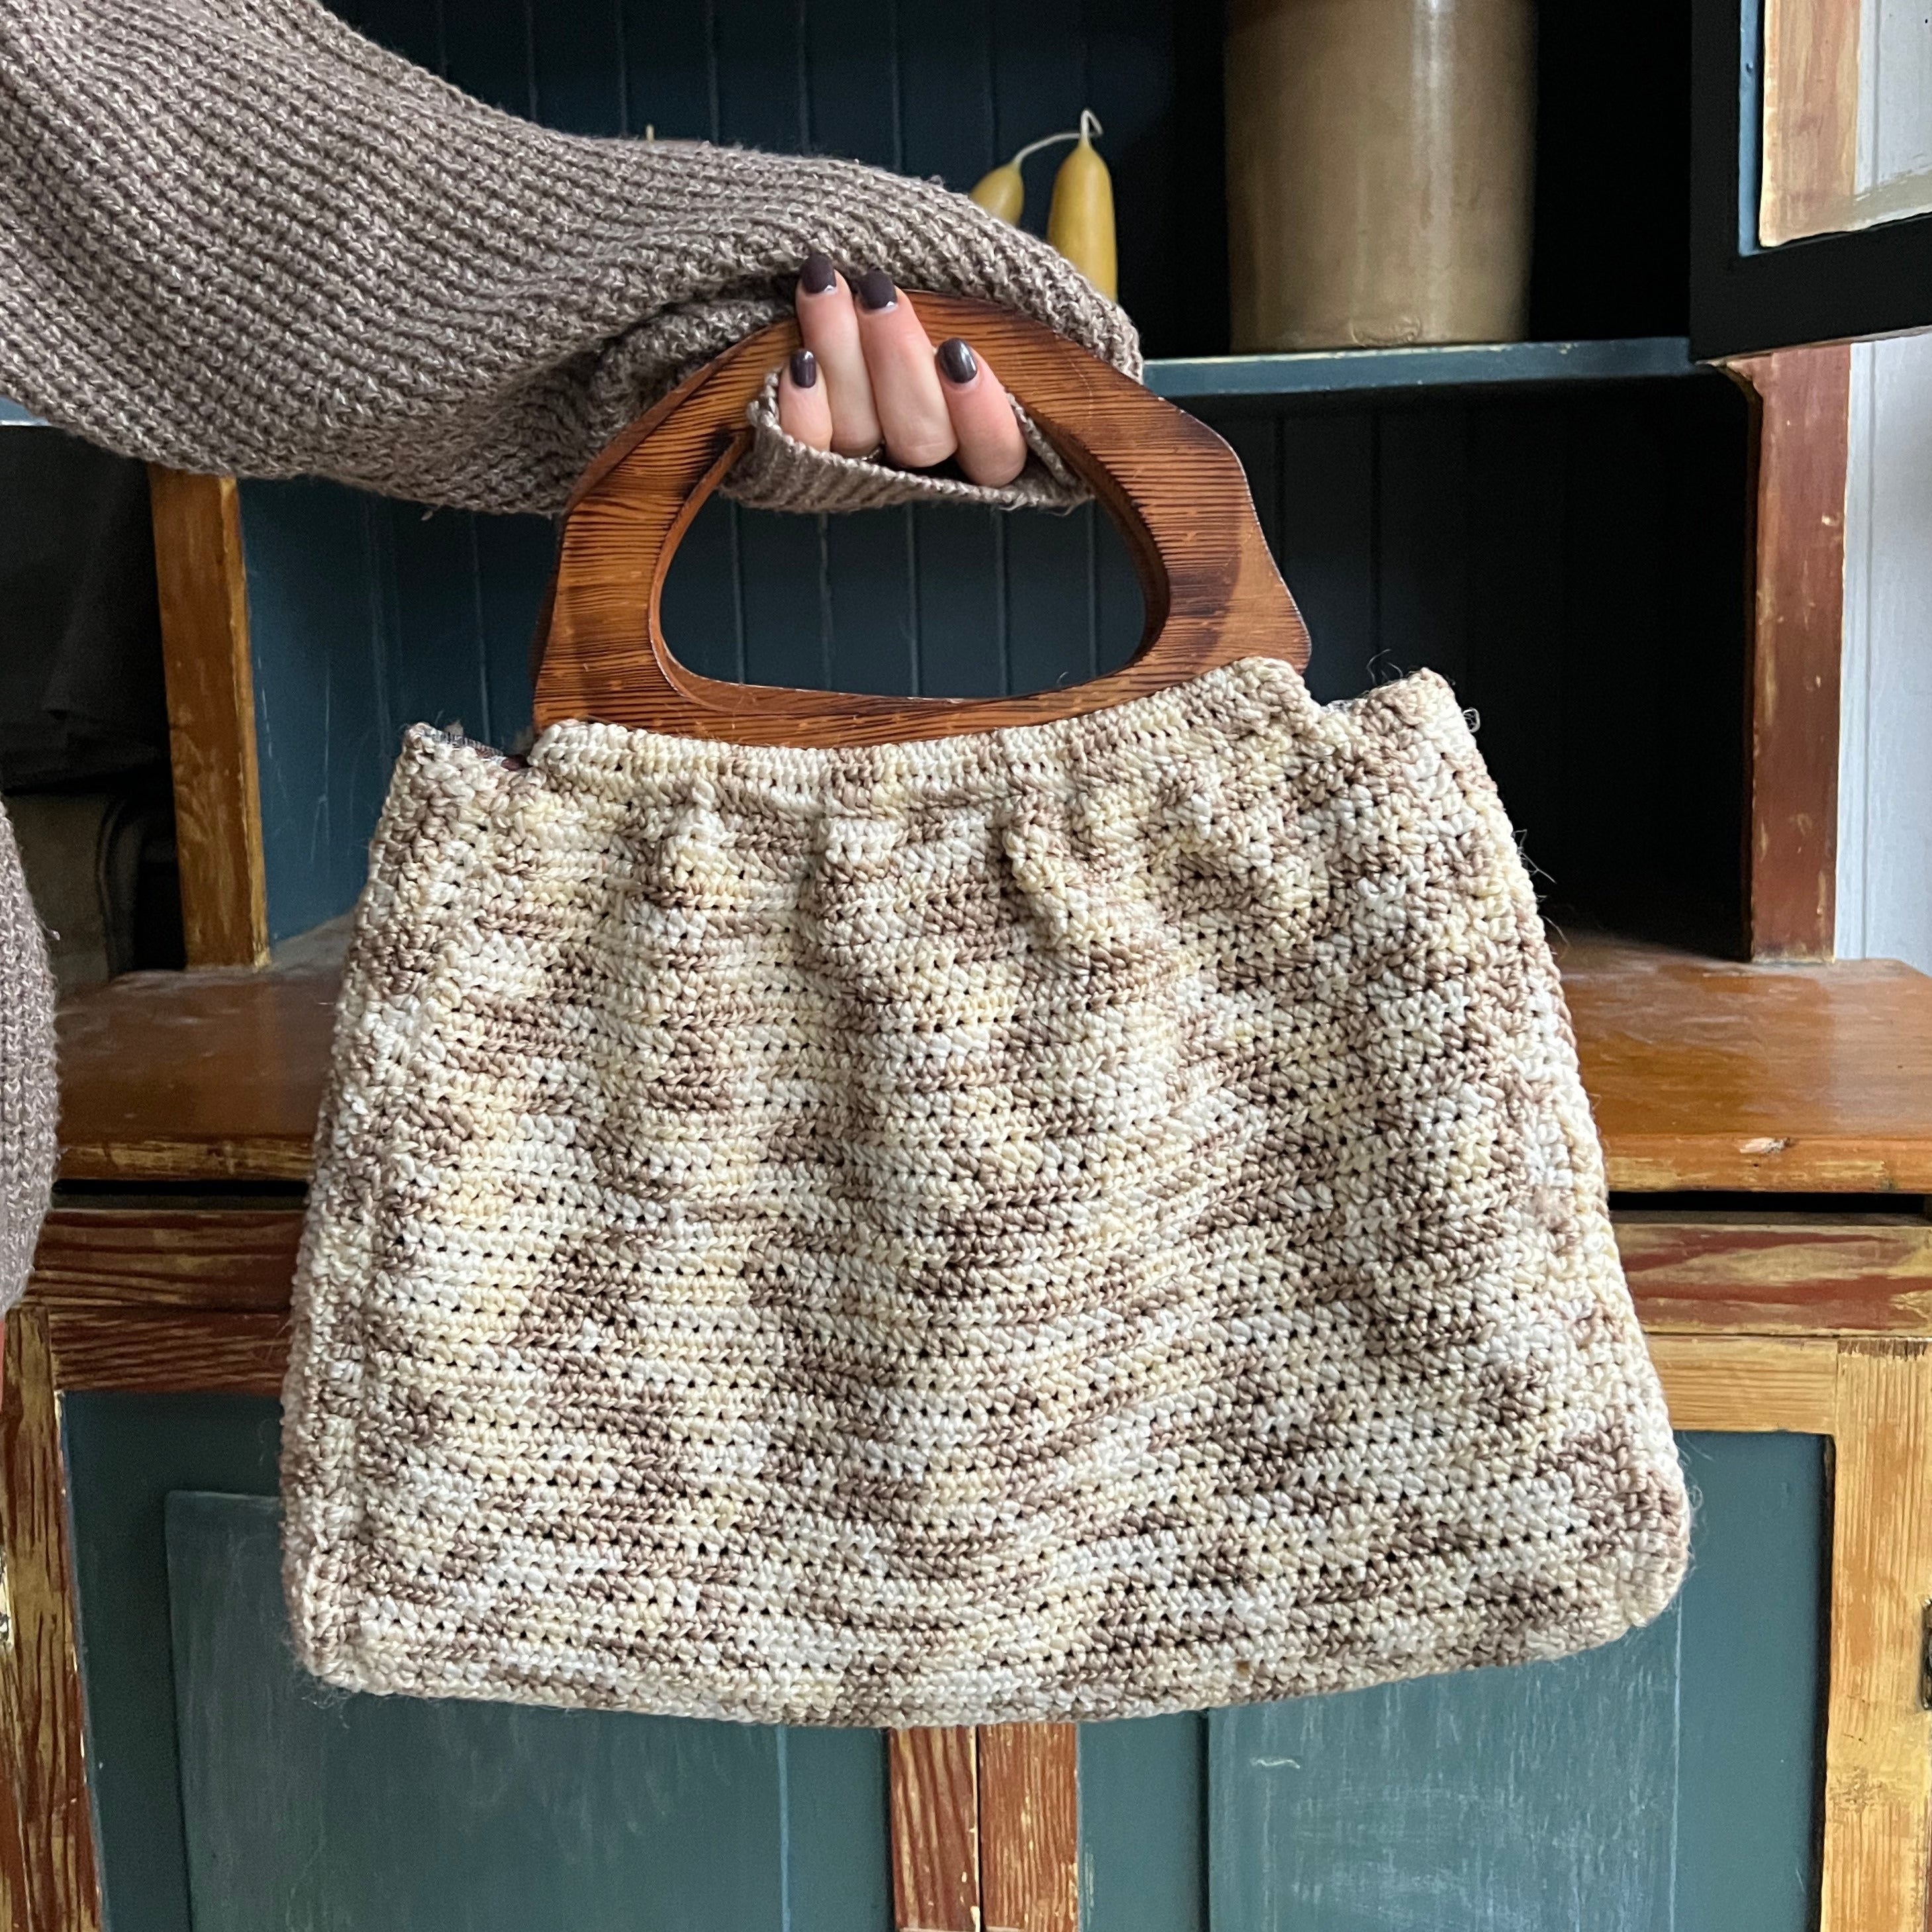 Reversible Crochet Bag